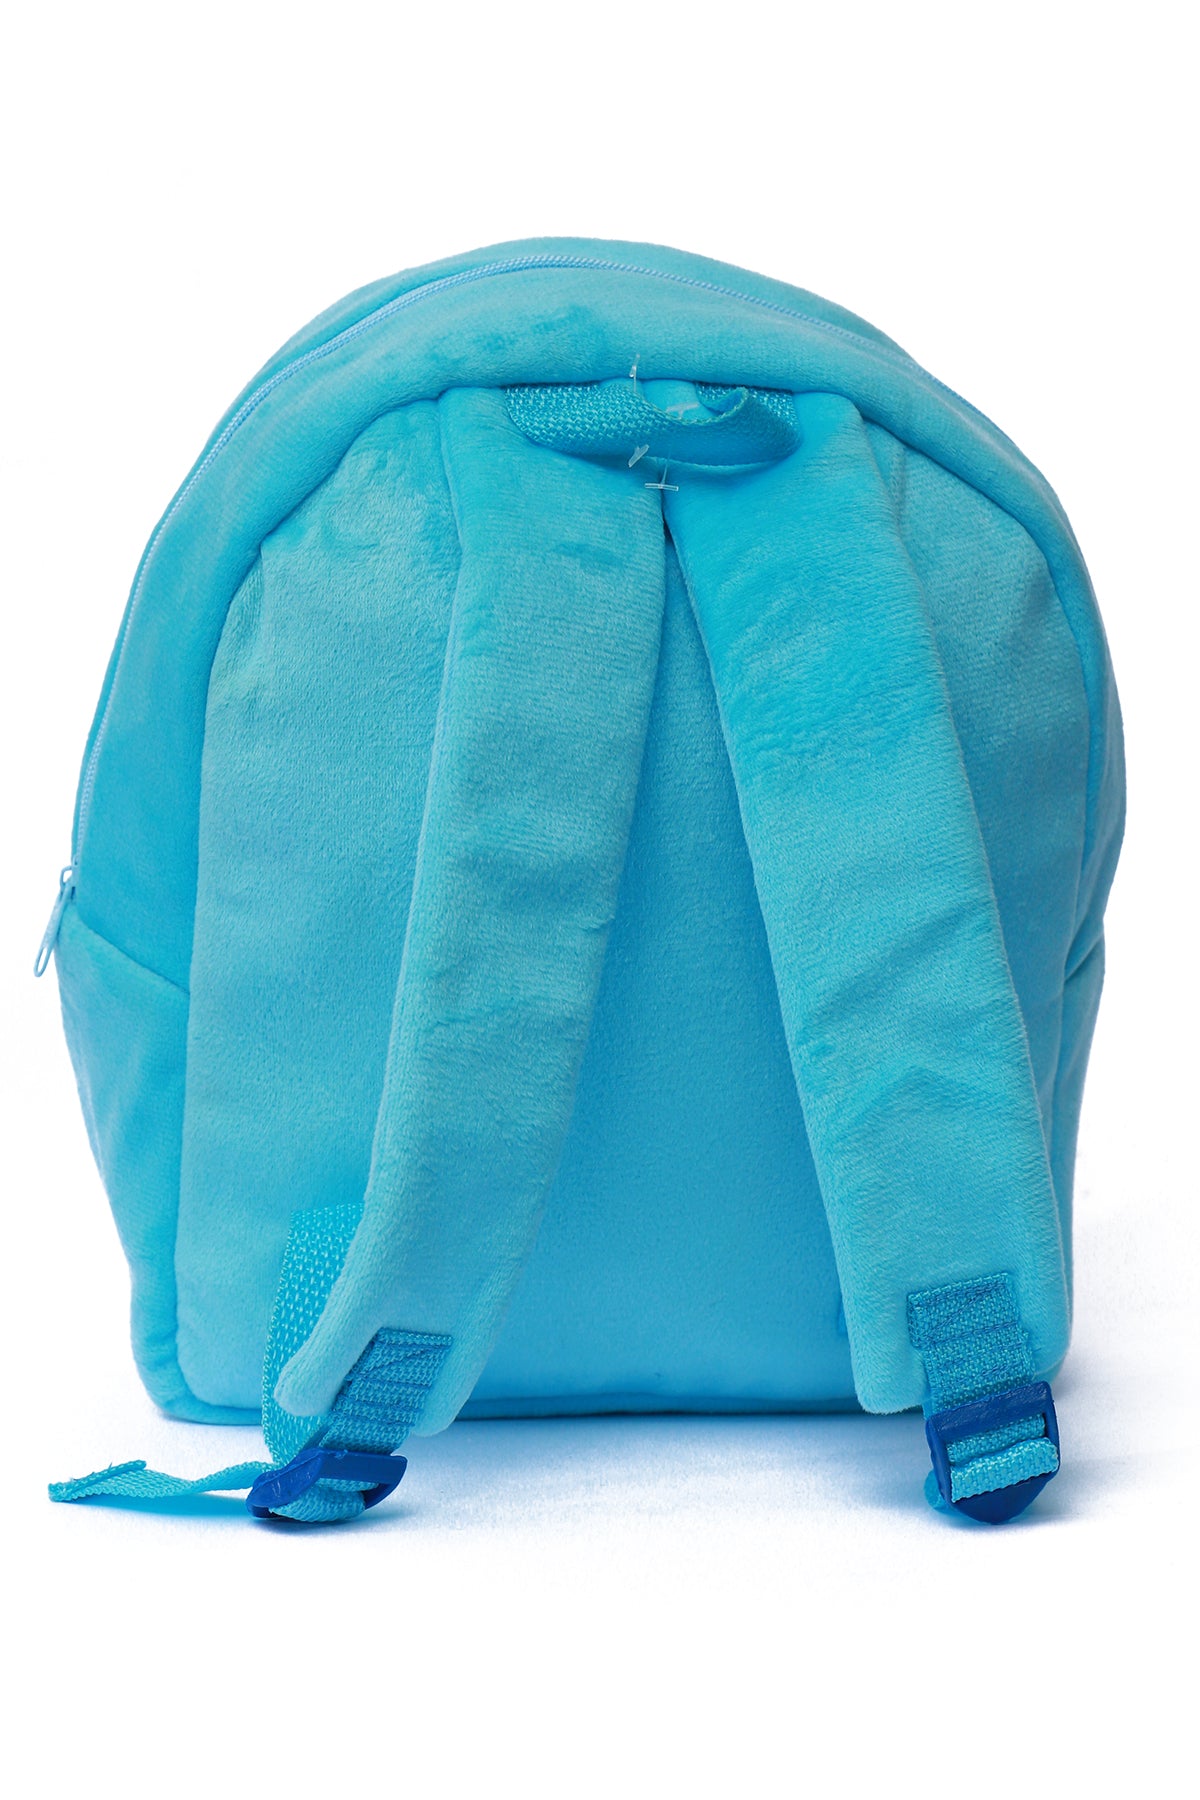 Doraemon Nursery Bag